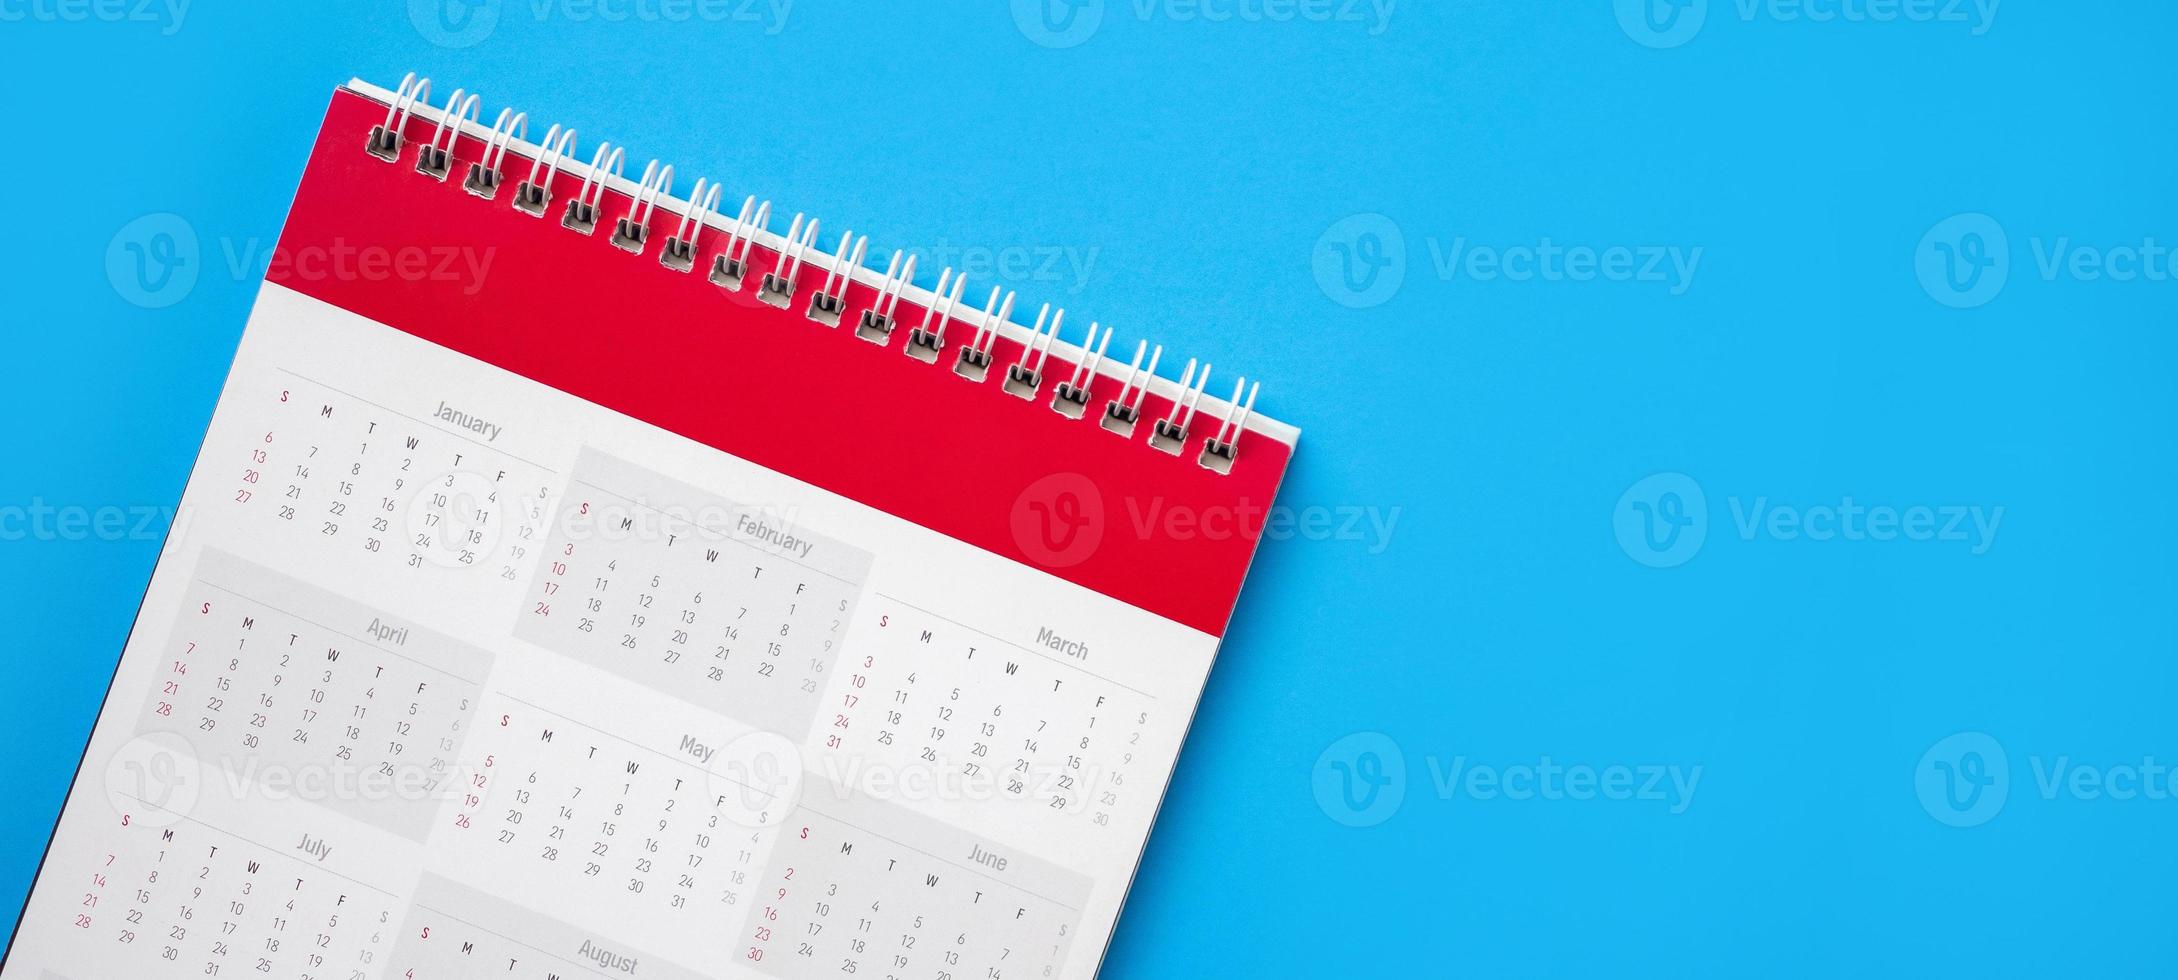 Kalenderseite auf blauem Hintergrund Business-Planung-Termin-Meeting-Konzept foto